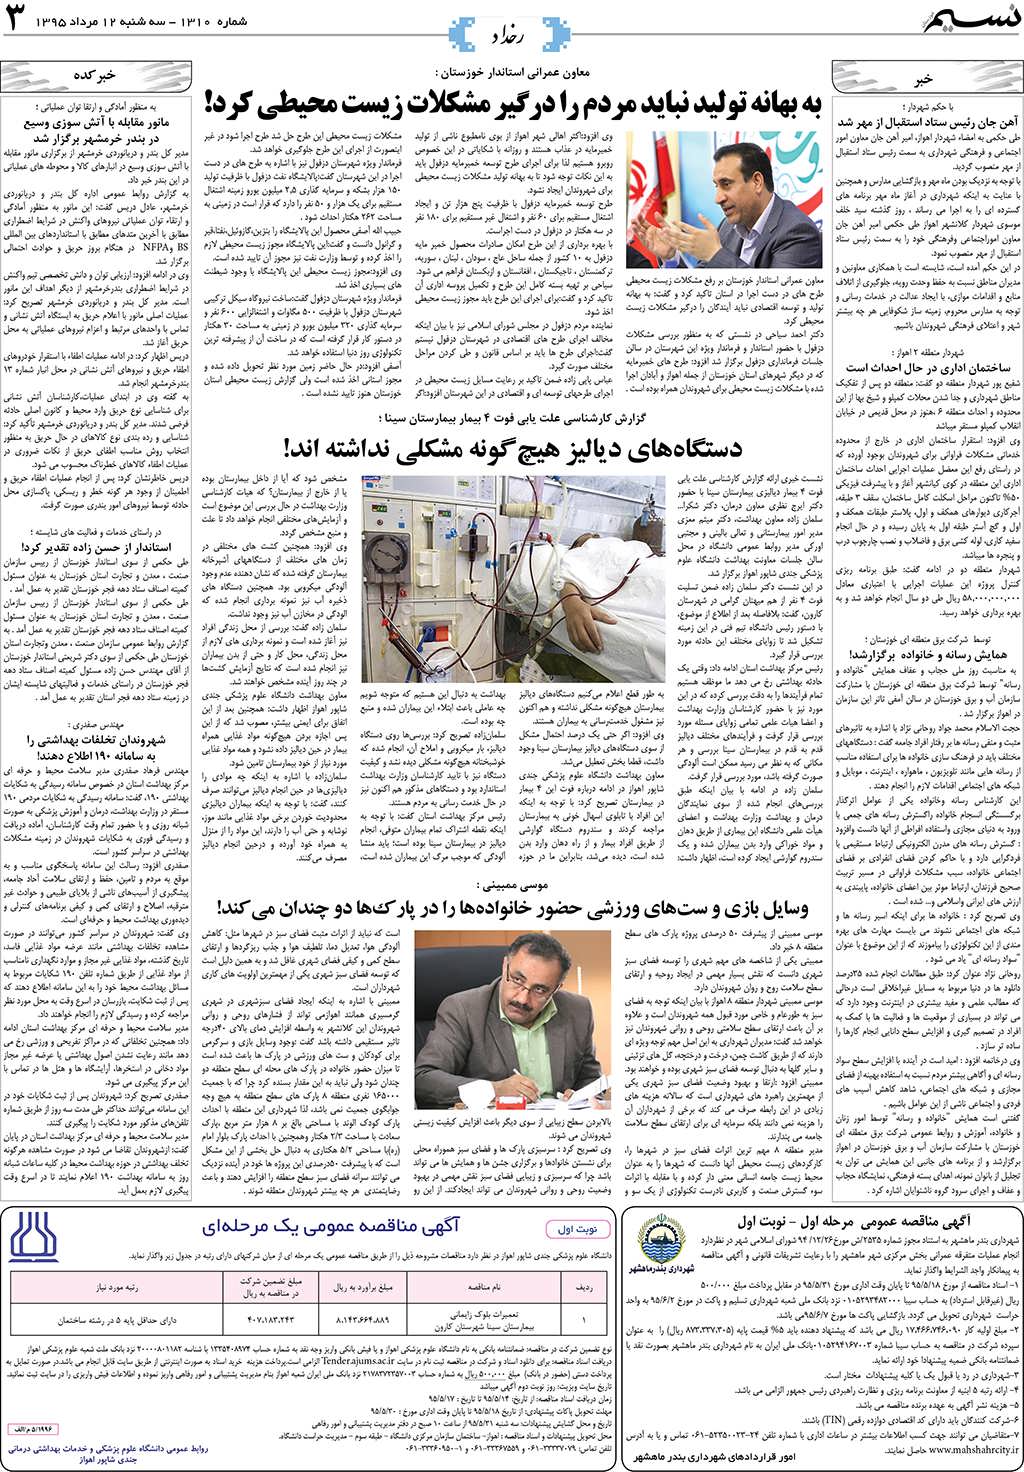 صفحه رخداد روزنامه نسیم شماره 1310